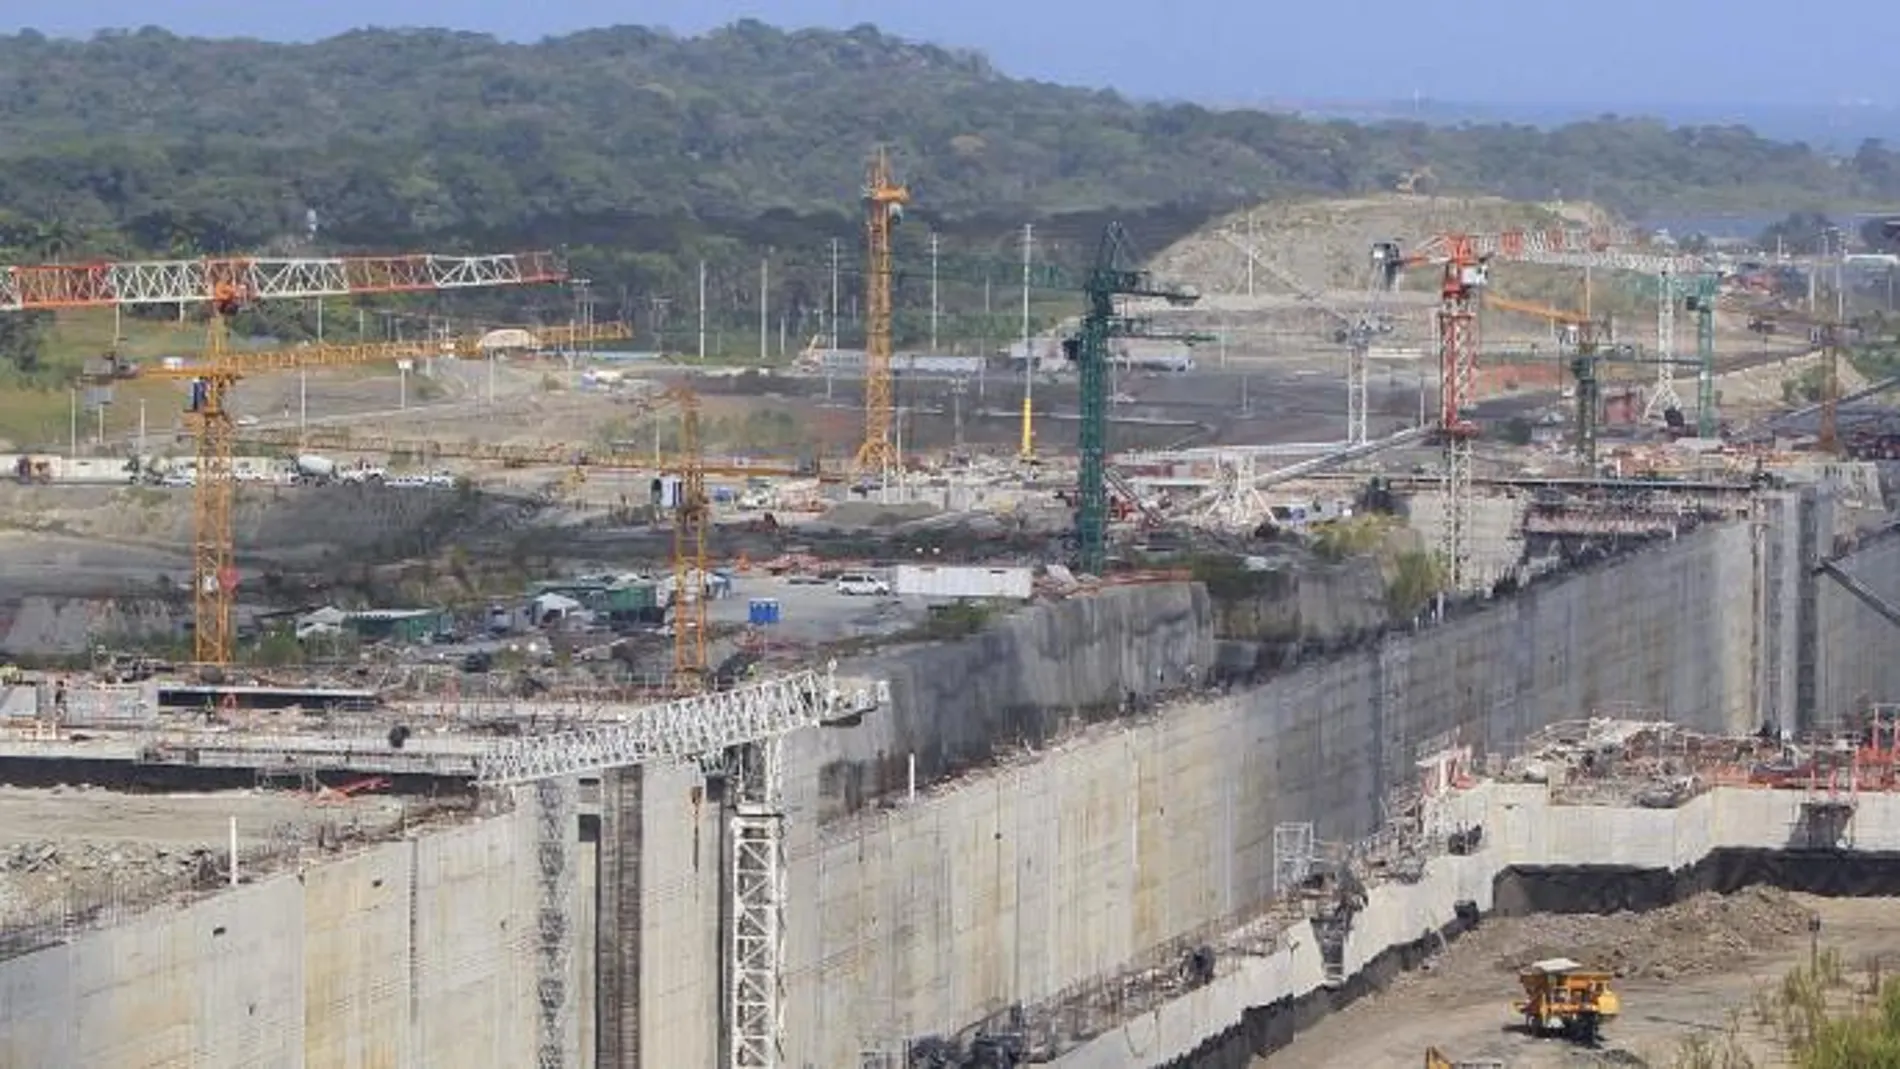 Vista general de los trabajos de ampliación del Canal de Panamá en su estado actual.